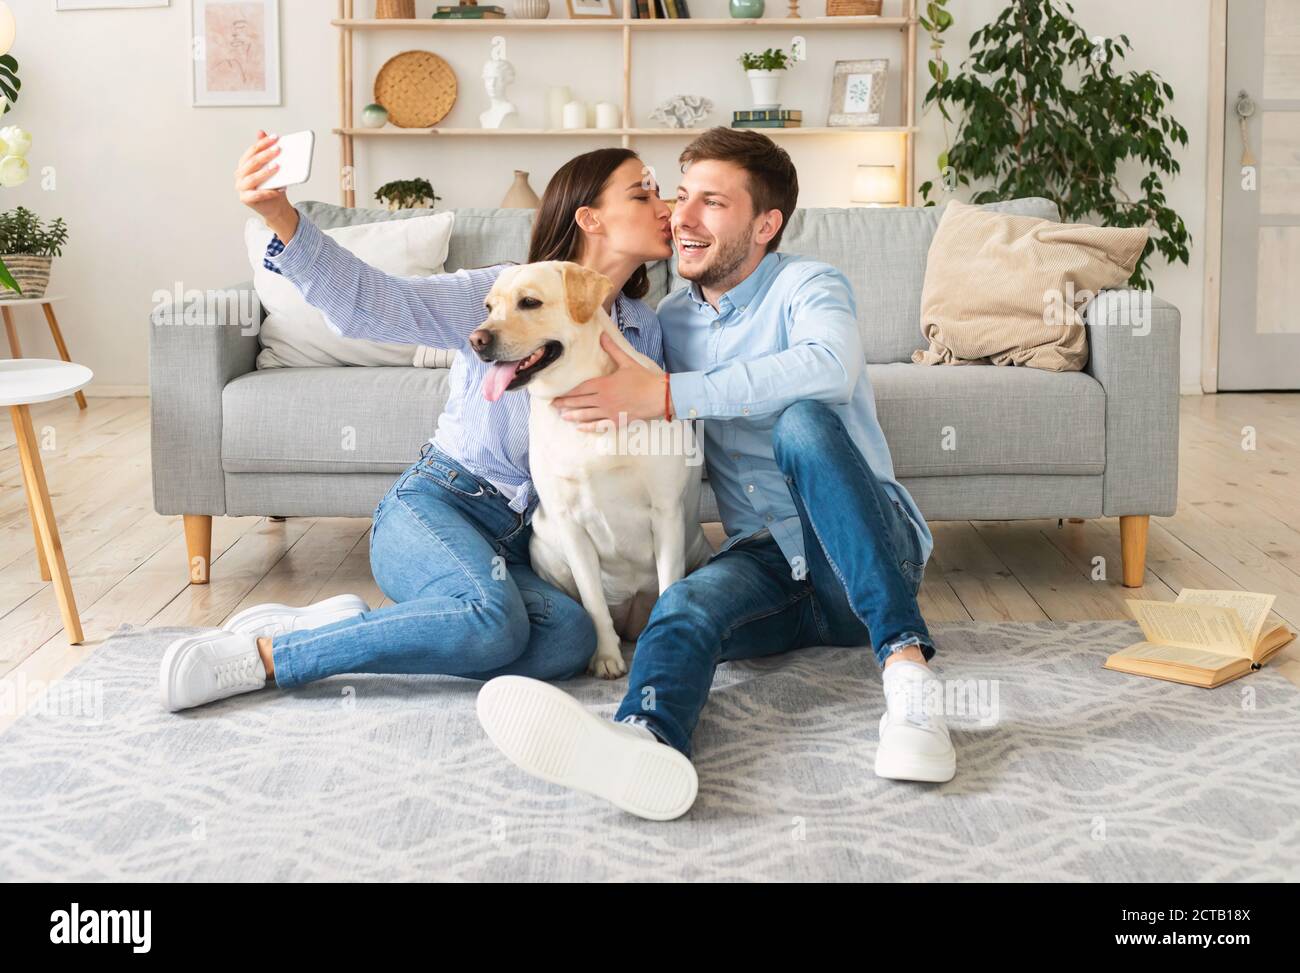 Pareja joven tomando selfie con su perro en la sala de estar Foto de stock